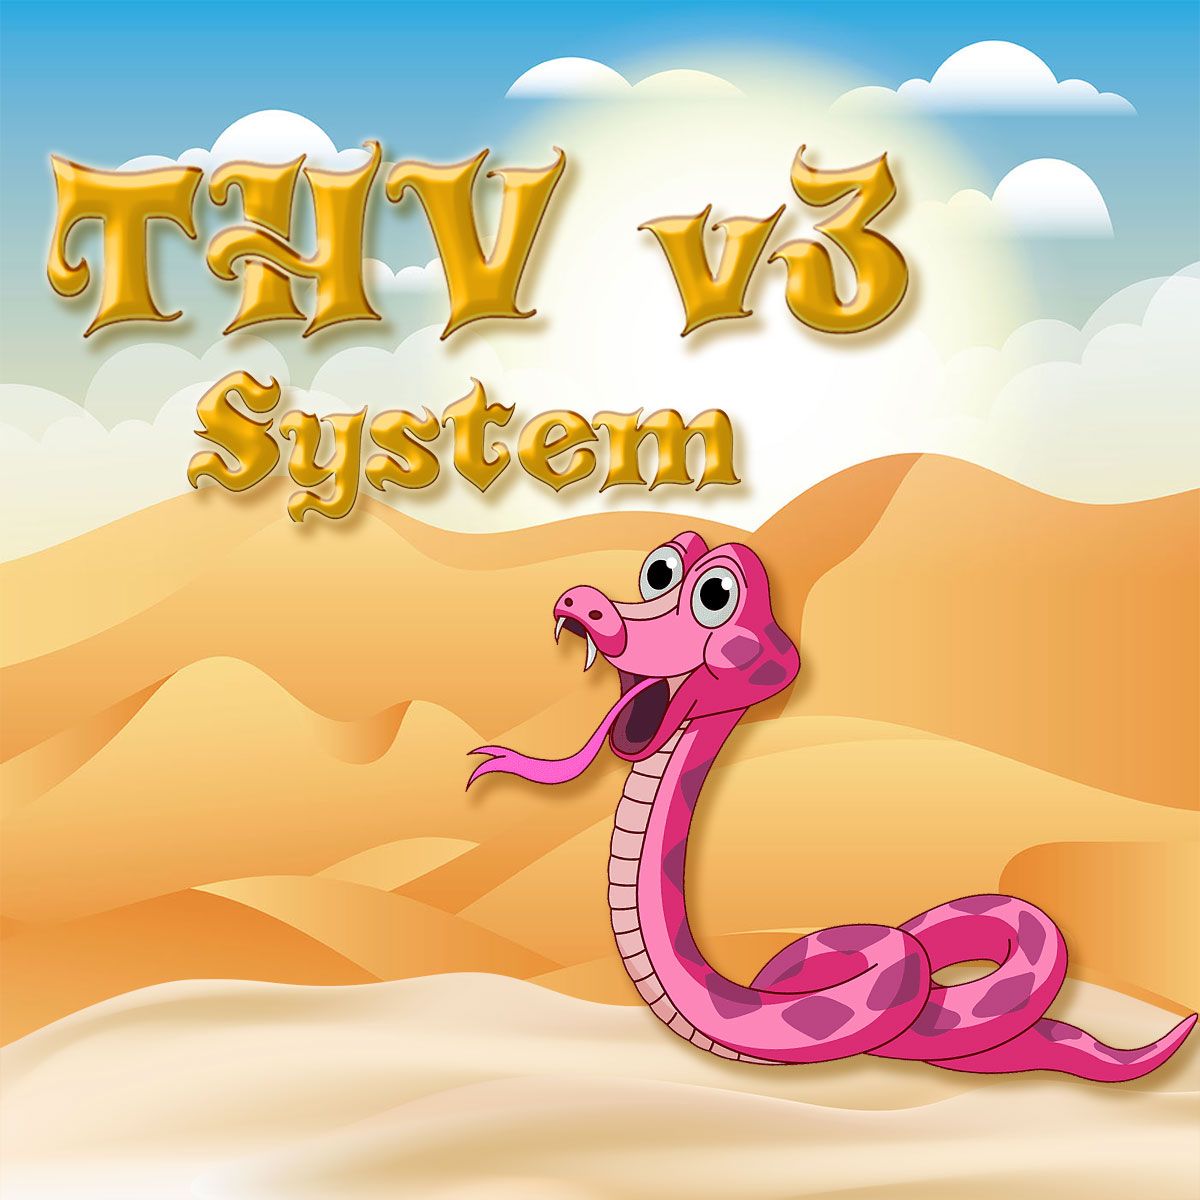 THV v3 system EA Tự động giao dịch